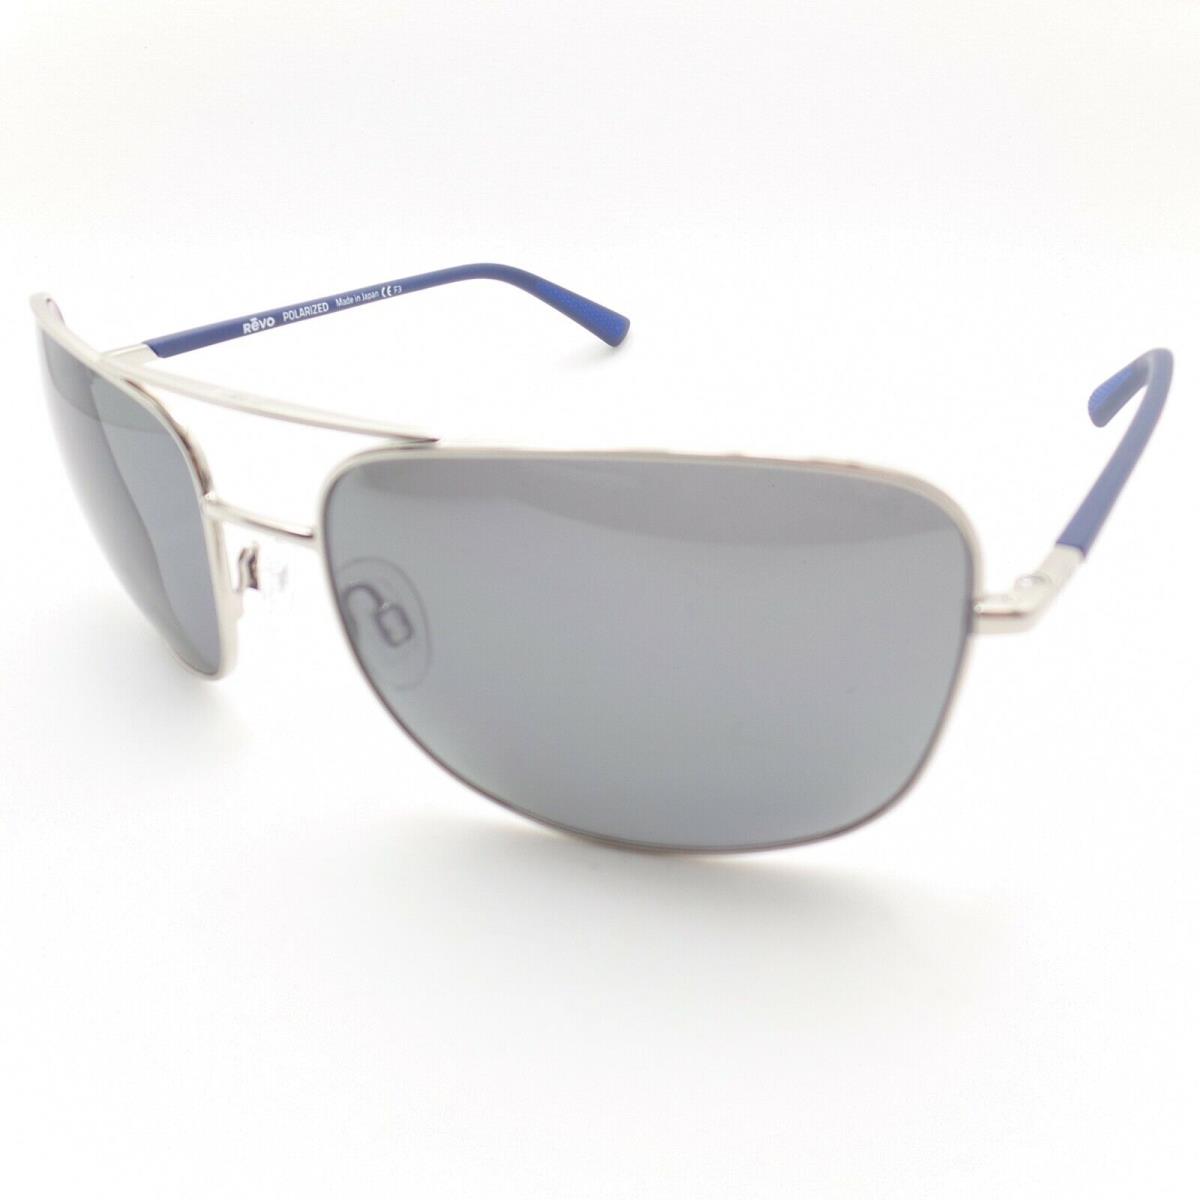 Revo sunglasses  - Chrome Frame, Graphite Lens